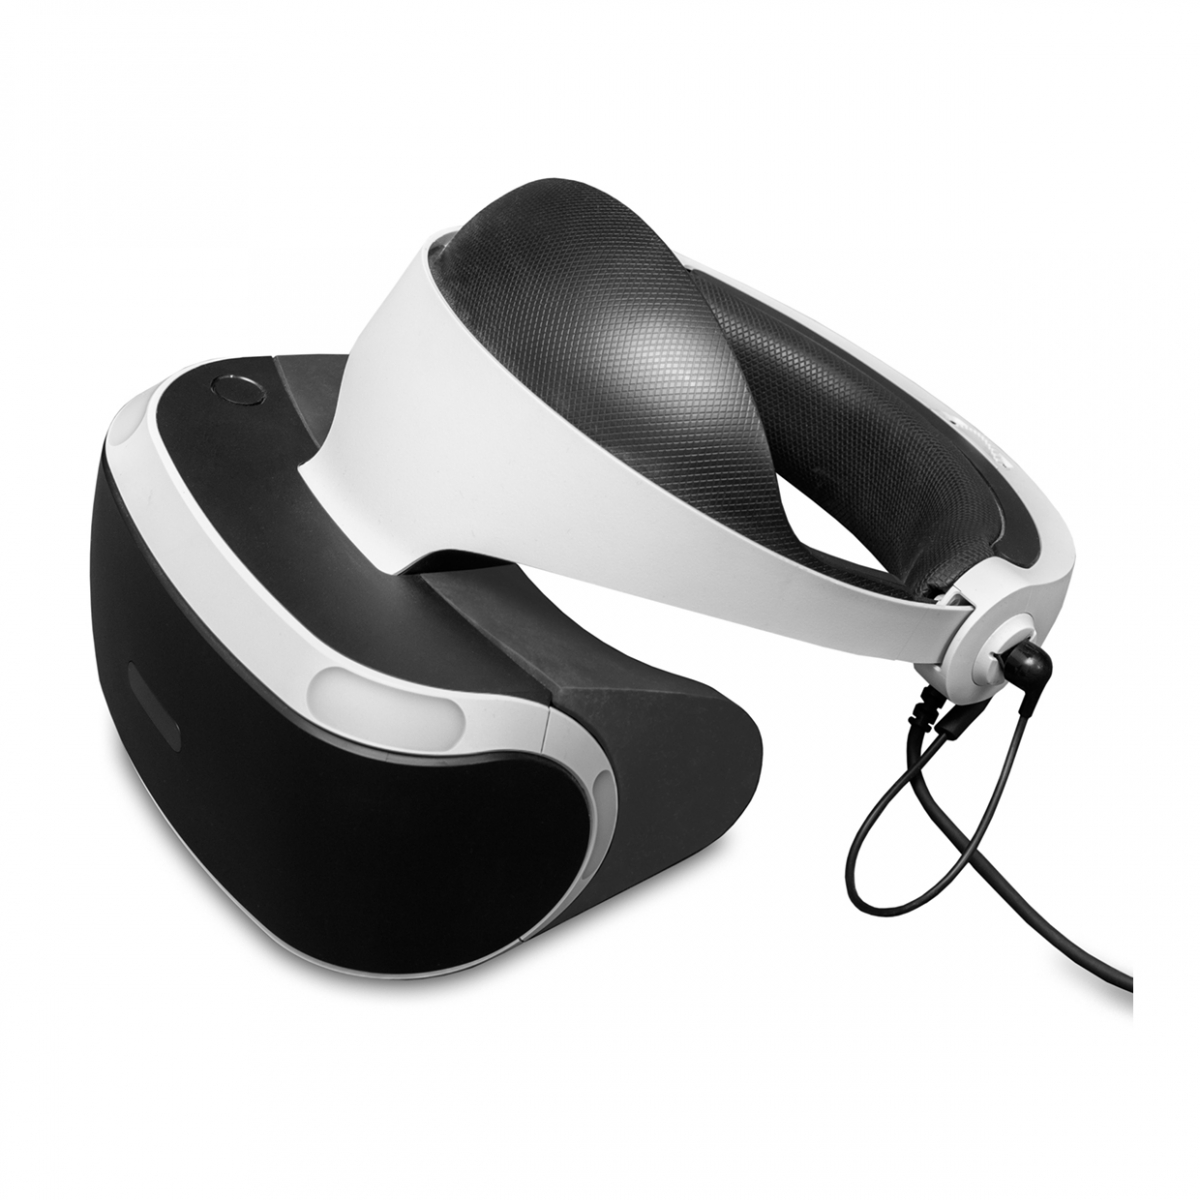 Imagen en la que se ve un casco de realidad virtual